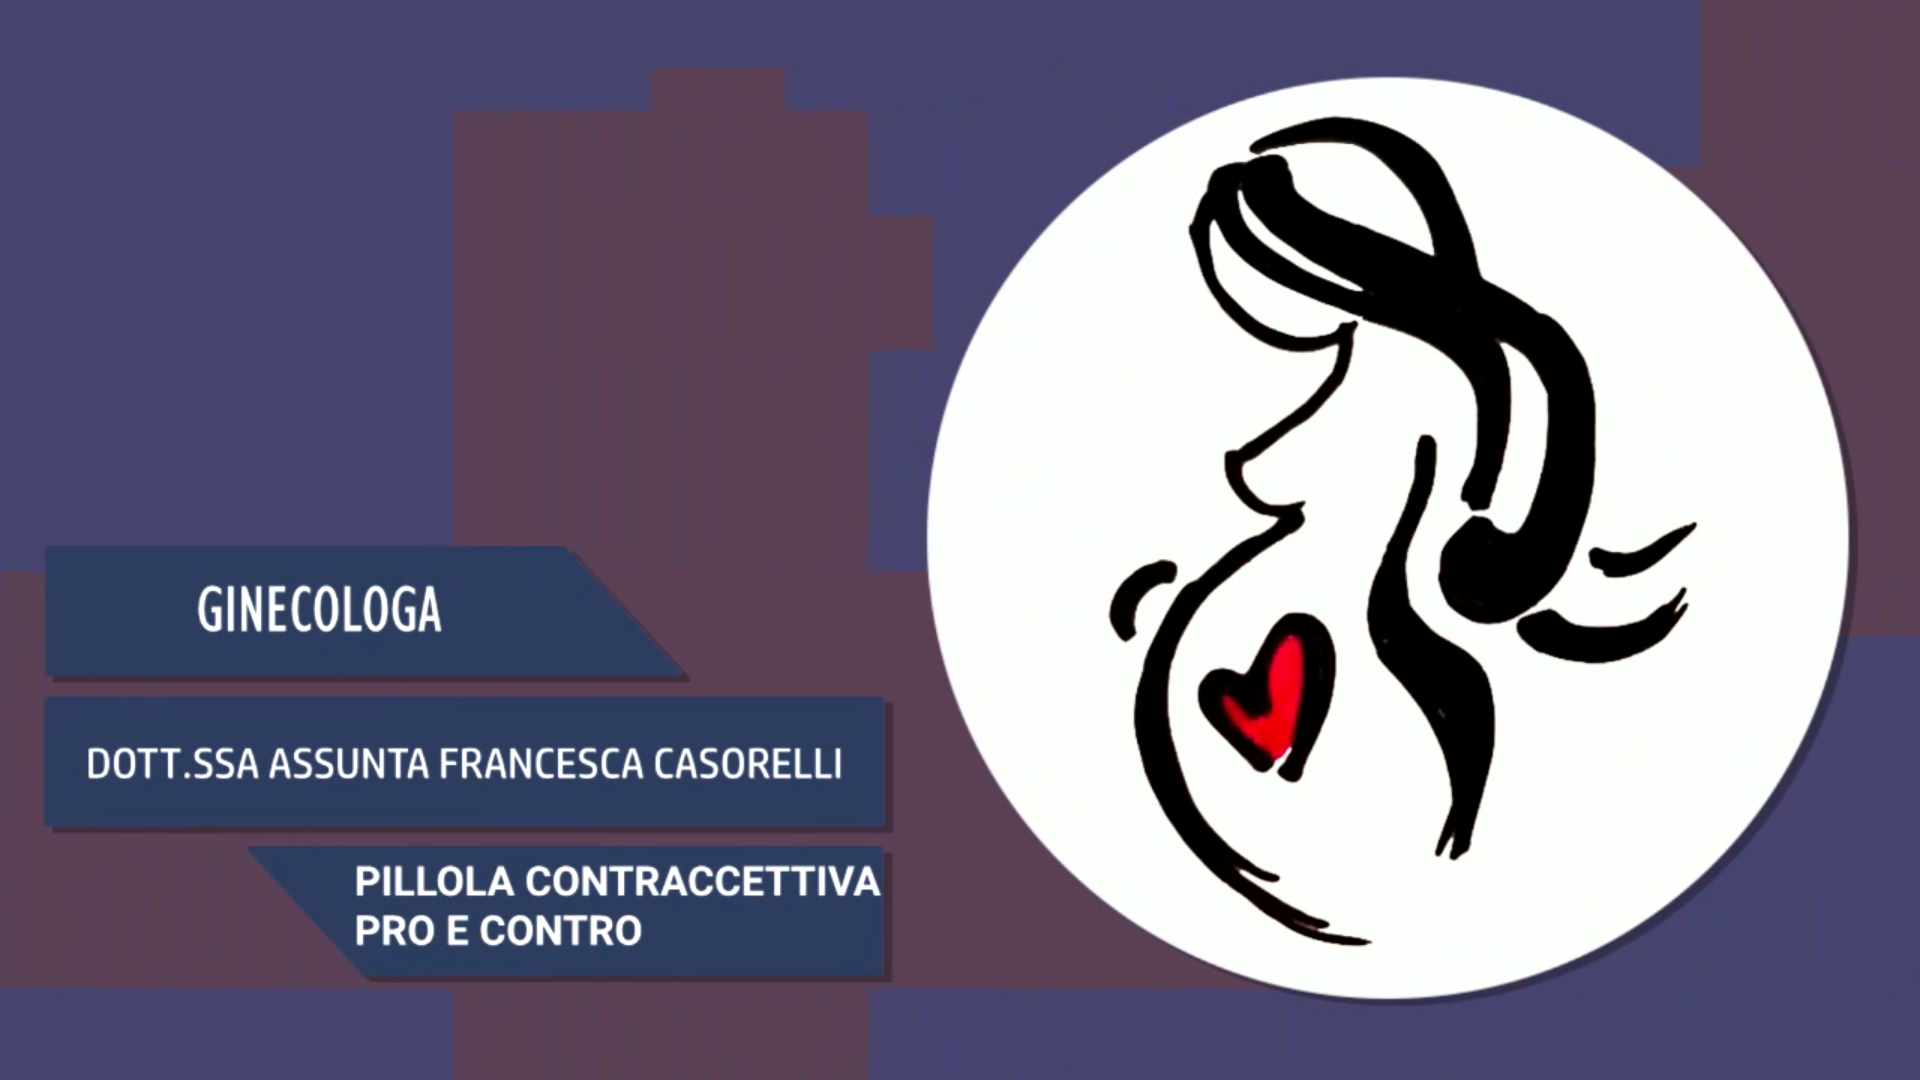 Intervista alla Dott.ssa Assunta Francesca Casorelli – Pillola contraccettiva pro e contro